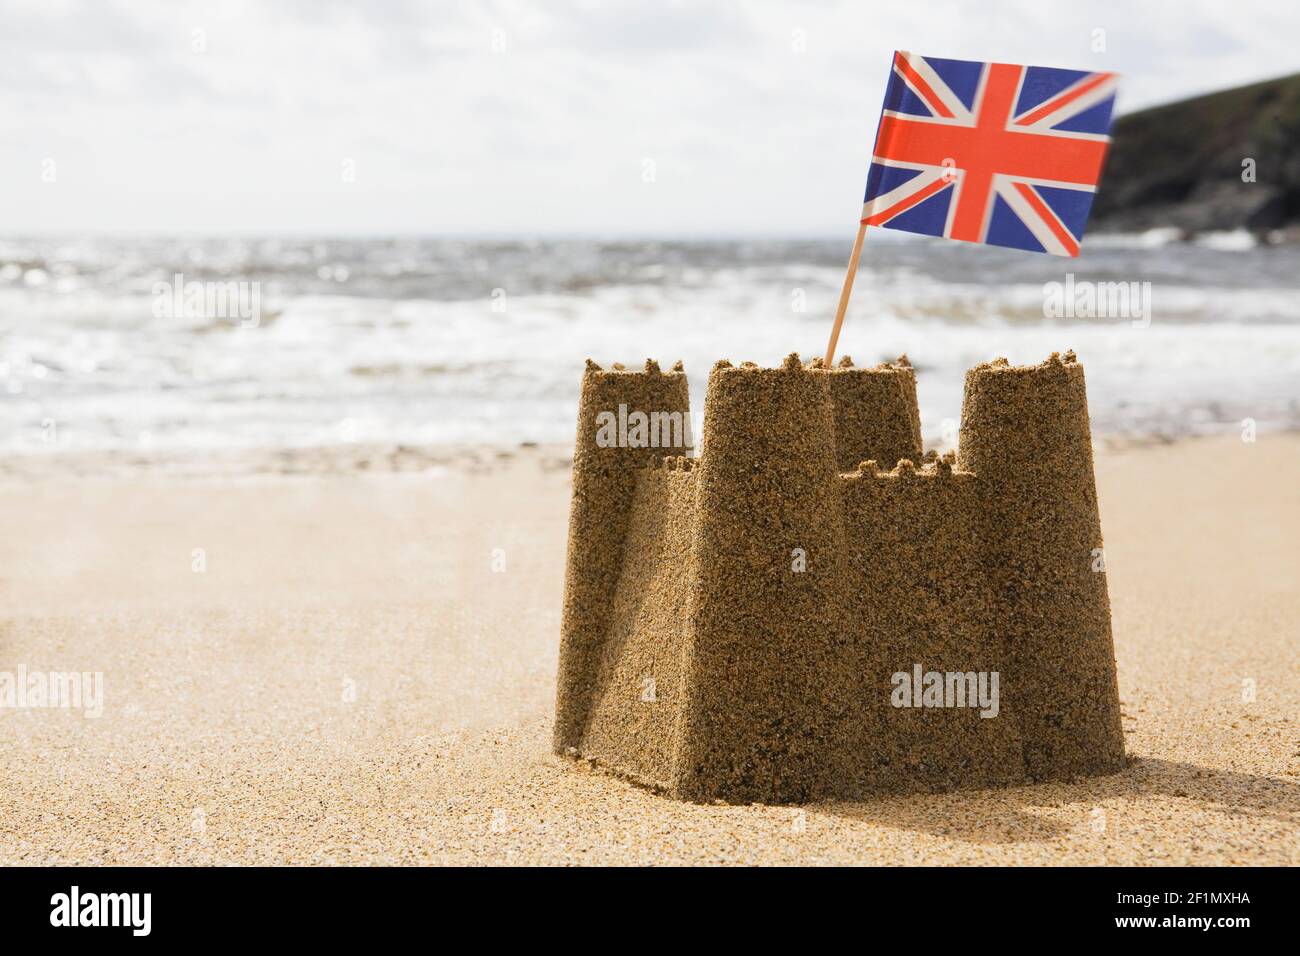 Sandcastle On Empty British Beach With UK Union Jack Flag Flying Stock Photo